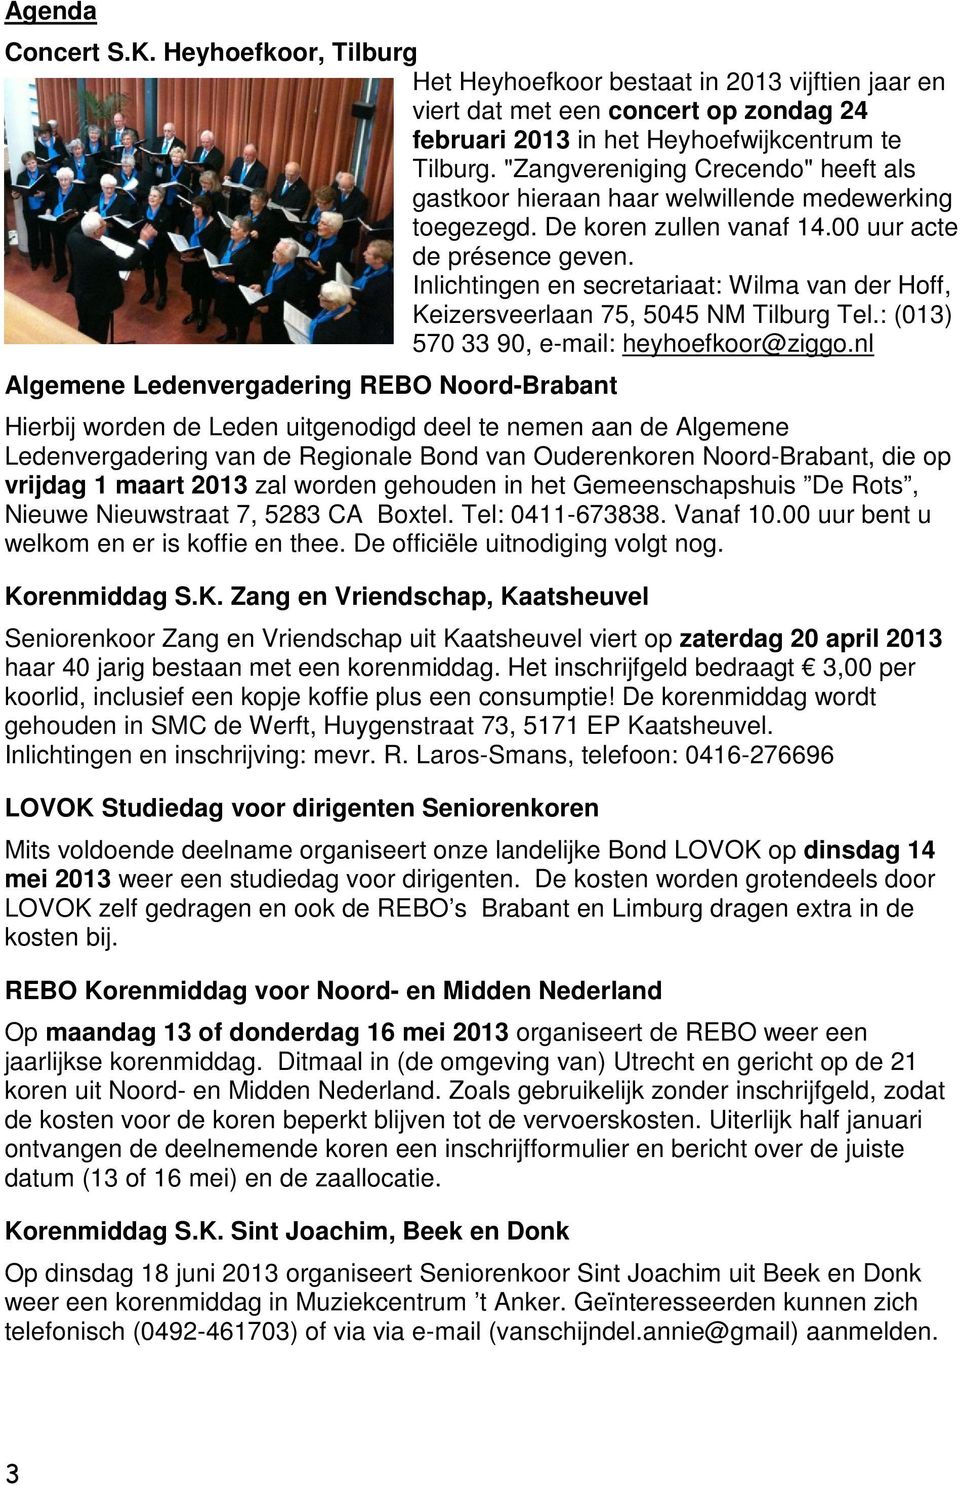 Inlichtingen en secretariaat: Wilma van der Hoff, Keizersveerlaan 75, 5045 NM Tilburg Tel.: (013) 570 33 90, e-mail: heyhoefkoor@ziggo.